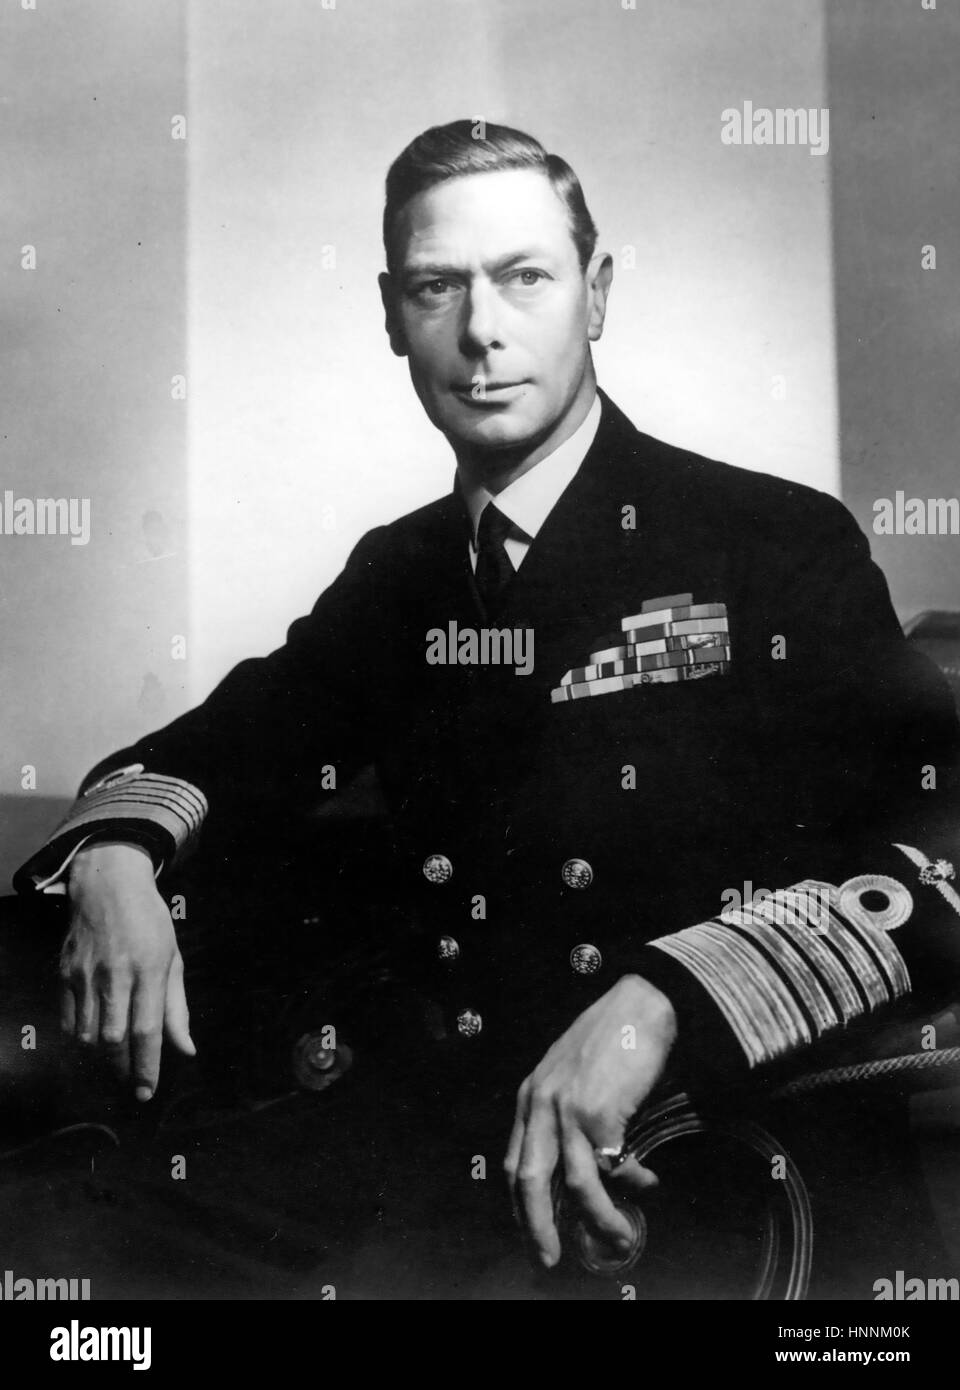 König GEORGE VI (1895-1952) in der Uniform eines Admirals der Flotte über 1945 Stockfoto